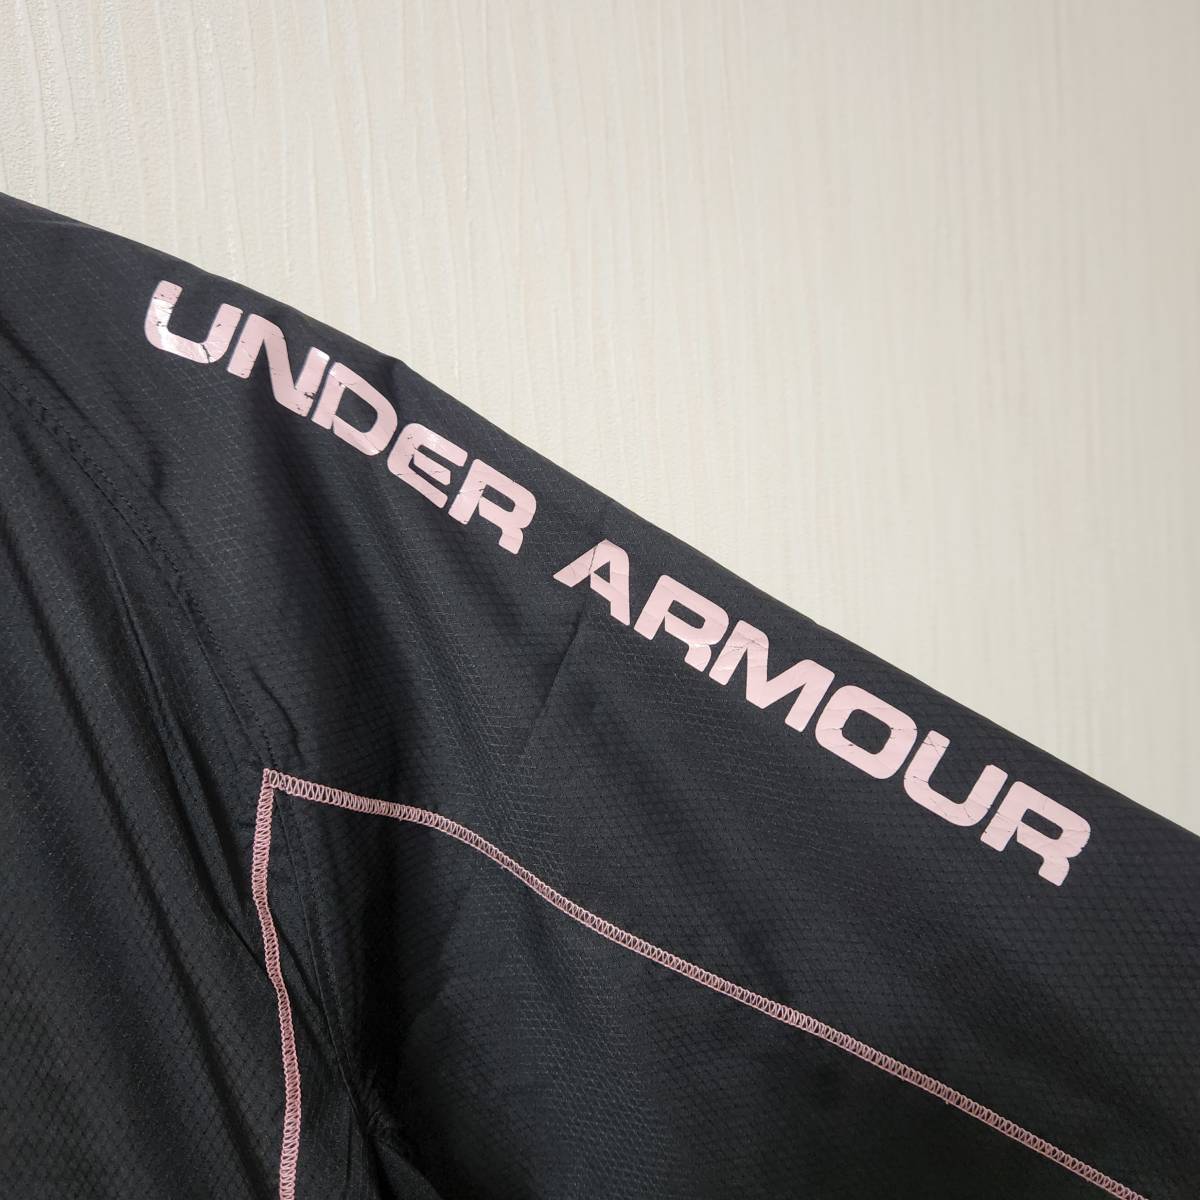 UNDER ARMOUR アンダーアーマーベースボール ウインドブレーカージャケット 薄手 黒×ピンク メンズXLサイズ スポーツウェア 野球_画像3